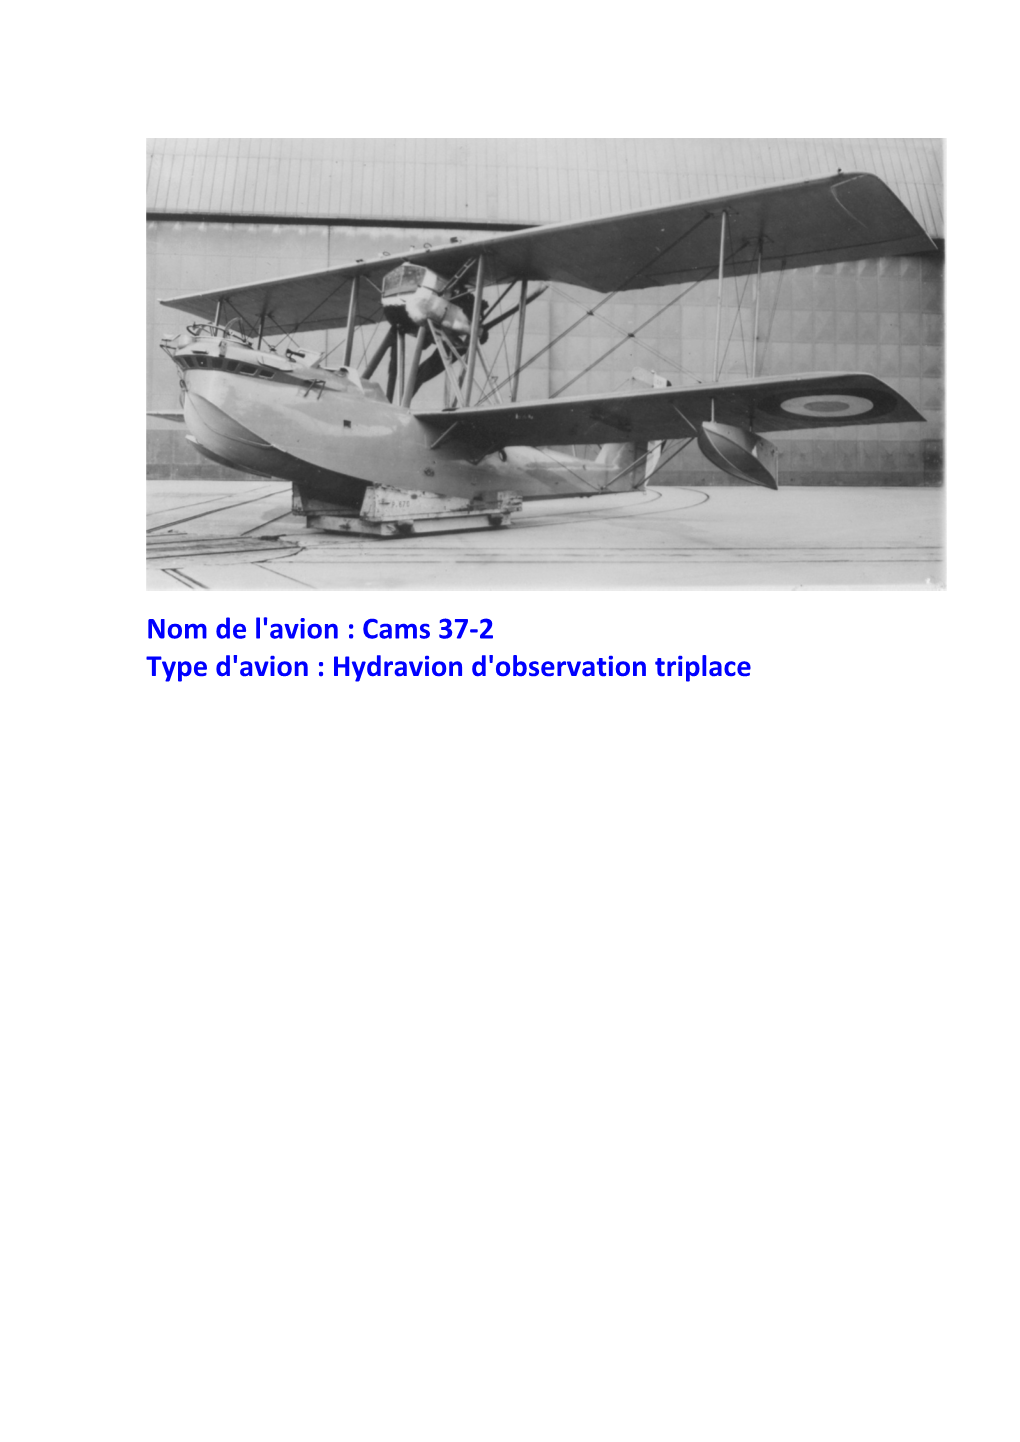 Nom De L'avion : Cams 37-2 Type D'avion : Hydravion D'observation Triplace MOTORISATION : Lorraine-Dietrich 12Ed